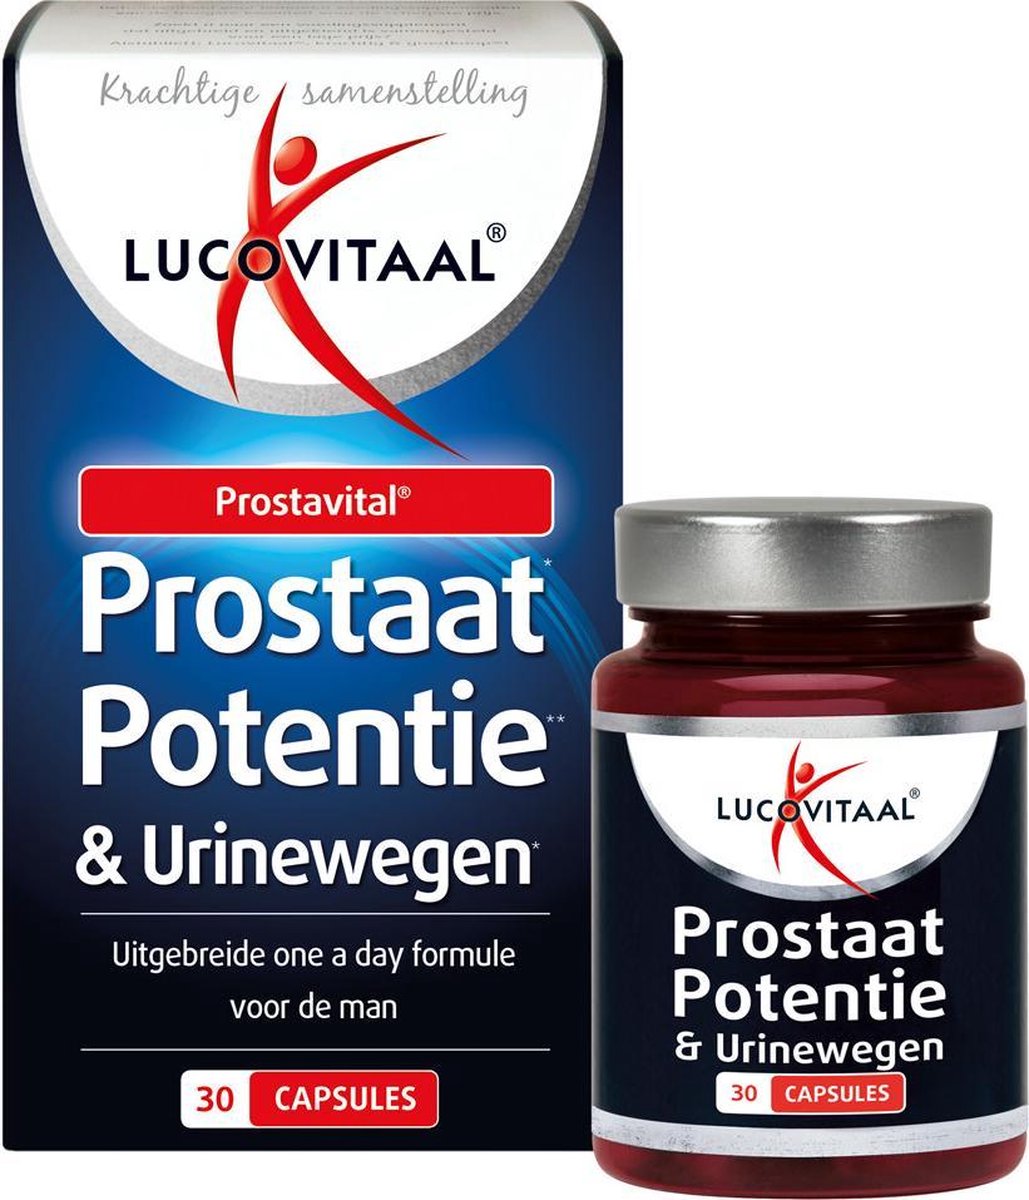 Lucovitaal - Prostaat, Potentie & Urinewegen - 30 capsules -  Voedingssupplement | bol.com